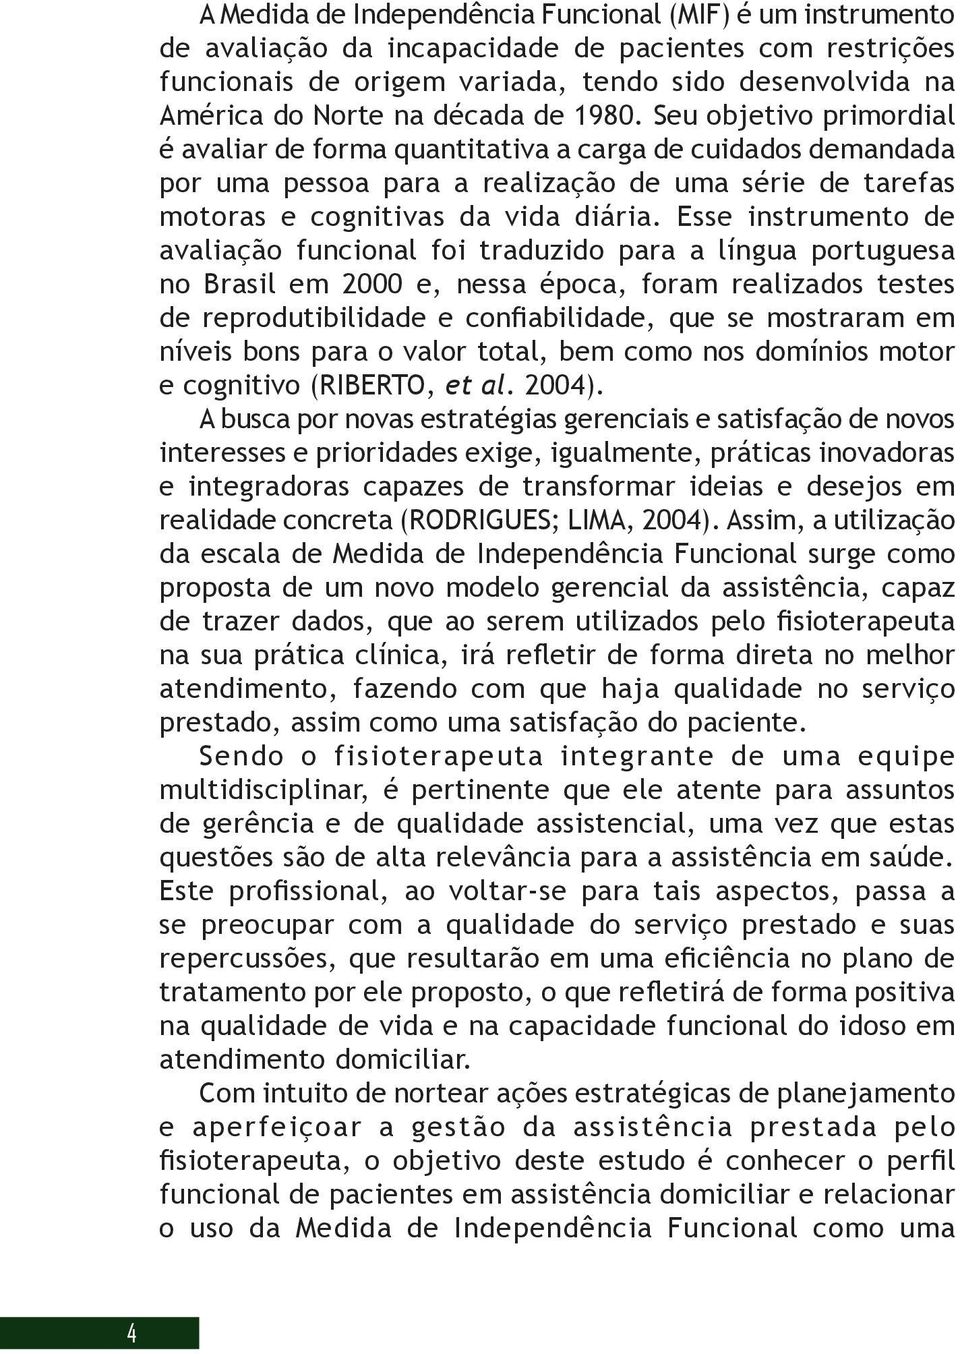 Esse instrumento de avaliação funcional foi traduzido para a língua portuguesa no Brasil em 2000 e, nessa época, foram realizados testes de reprodutibilidade e confiabilidade, que se mostraram em